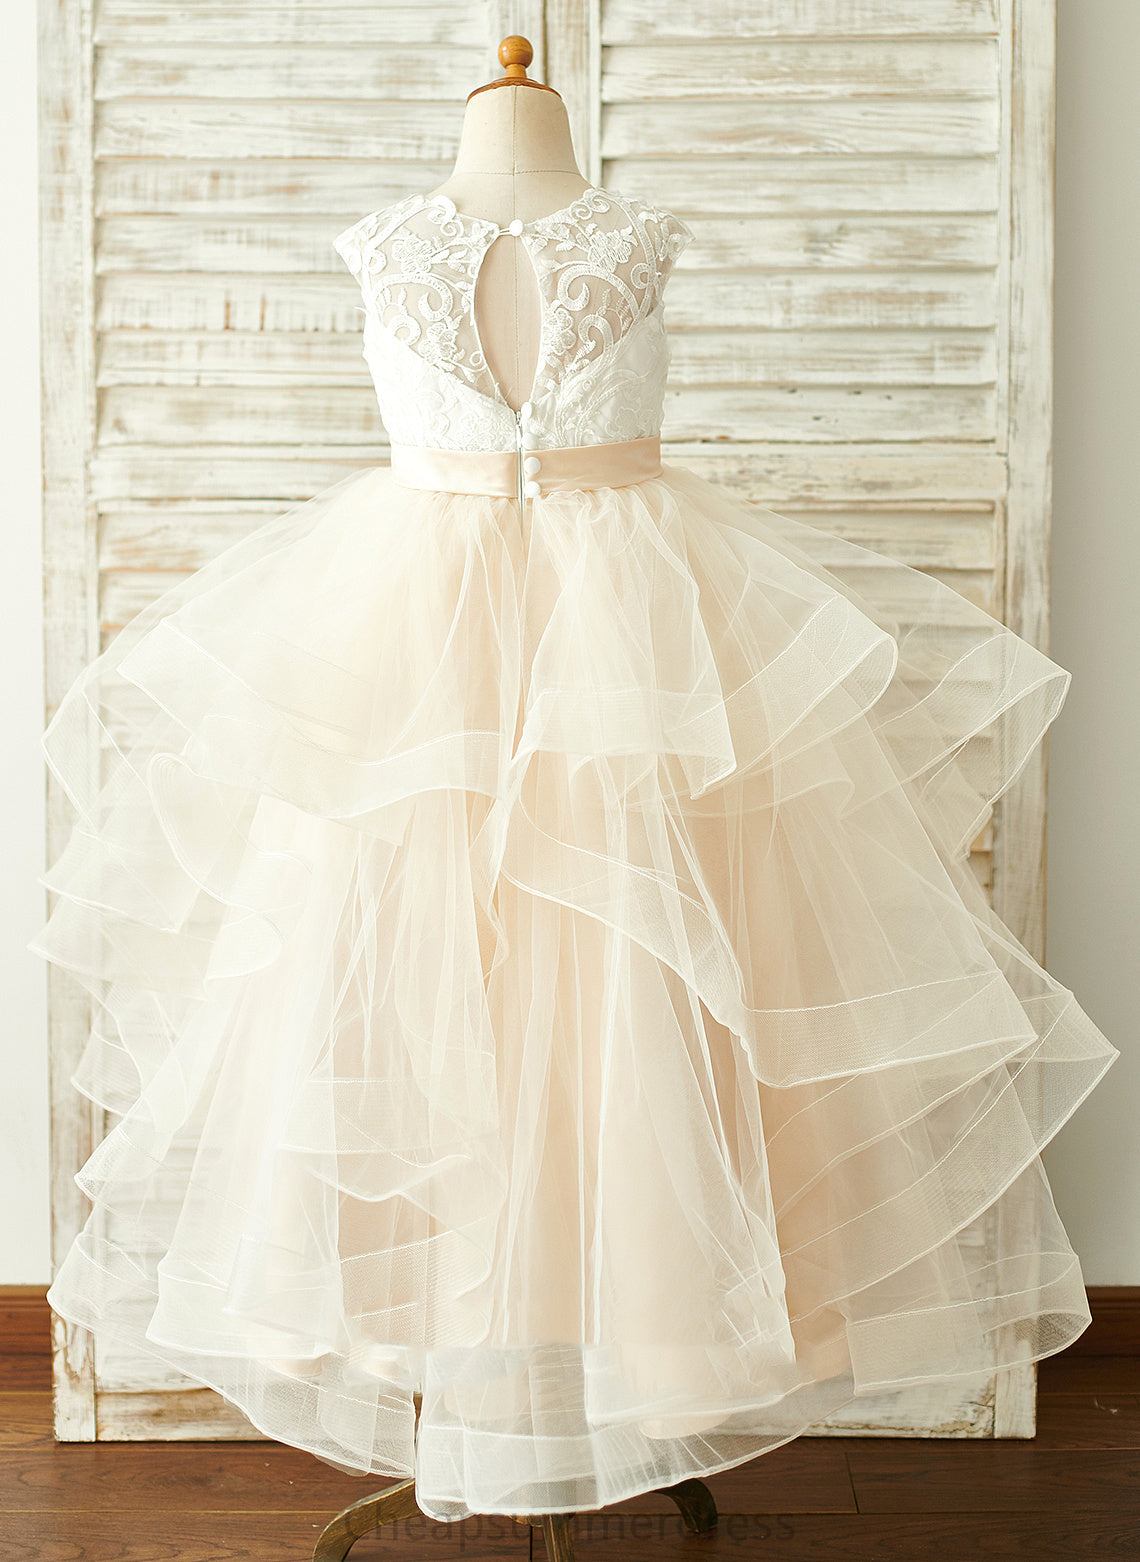 - Dress Girl Jada Ball-Gown/Princess Flower Sleeveless Tulle/Lace Flower Girl Dresses Floor-length Scoop Neck